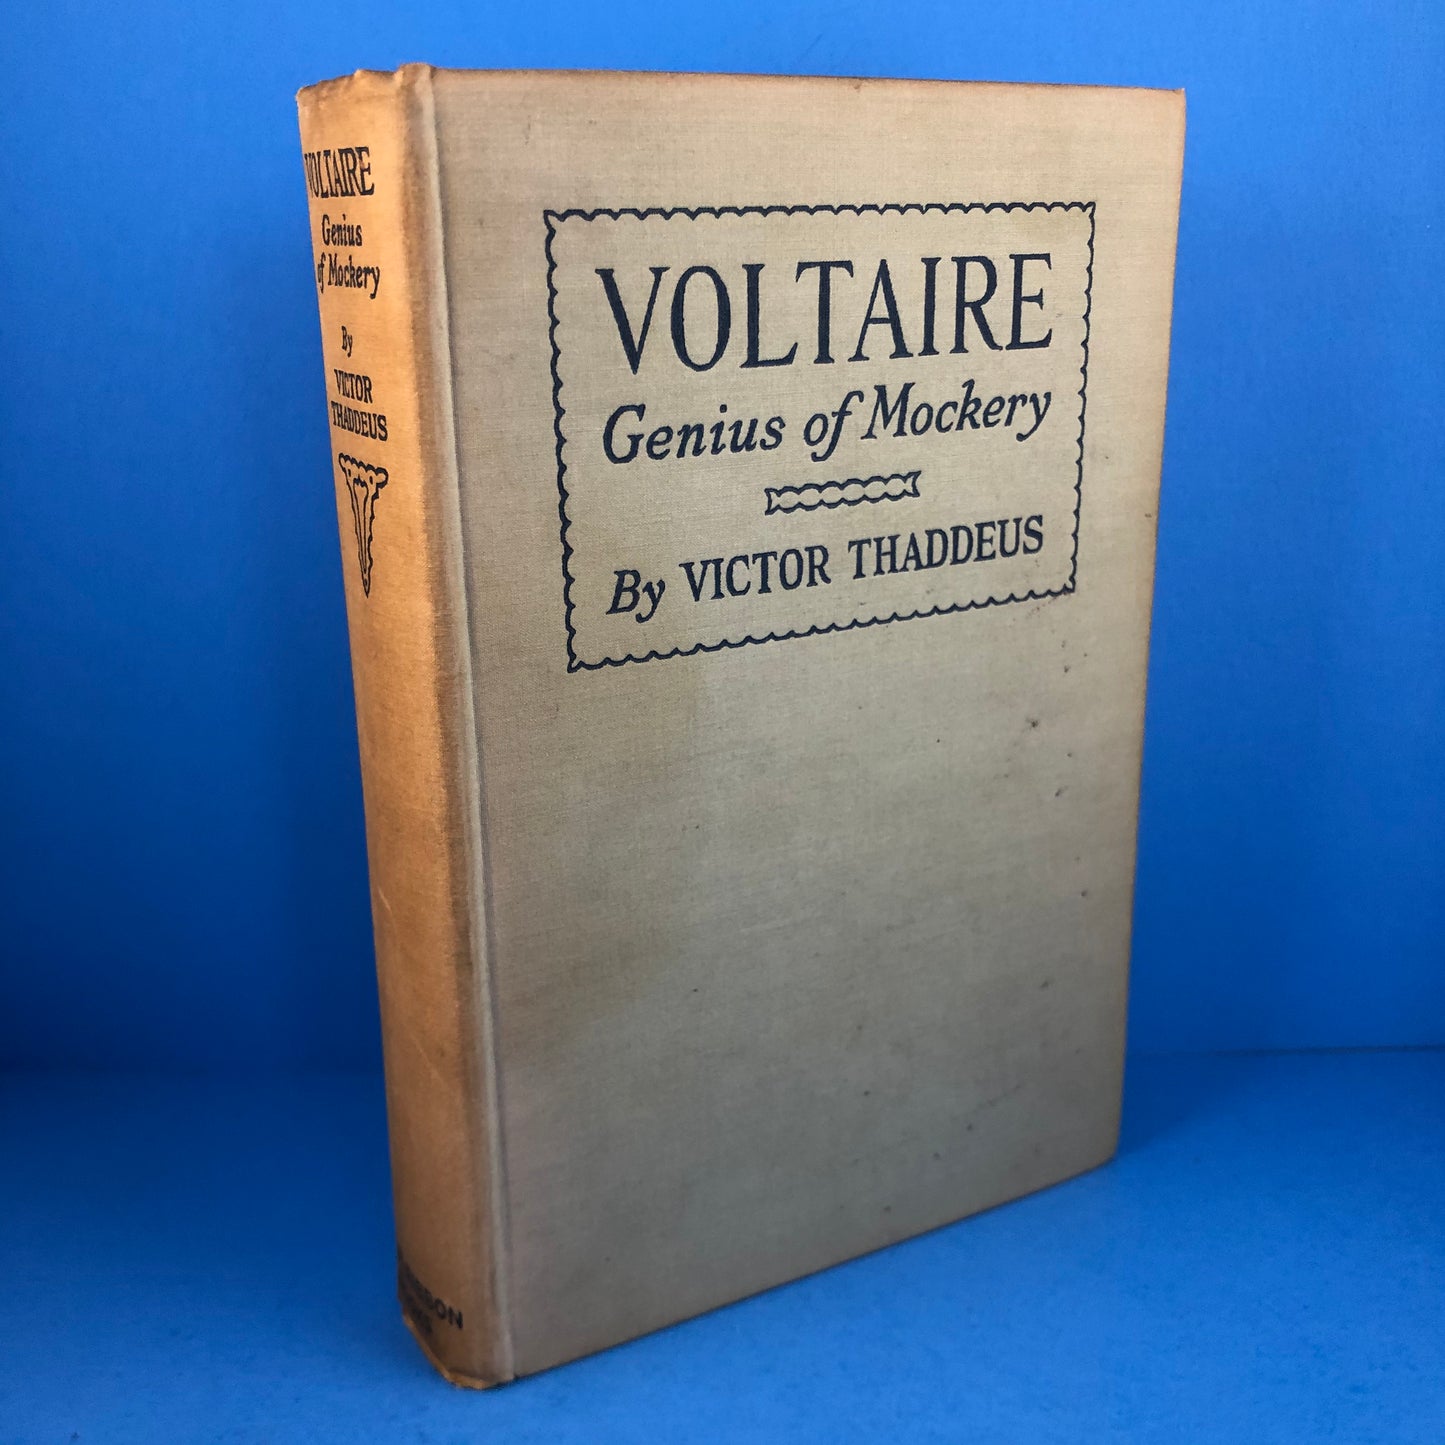 Voltaire: Genius of Mockery